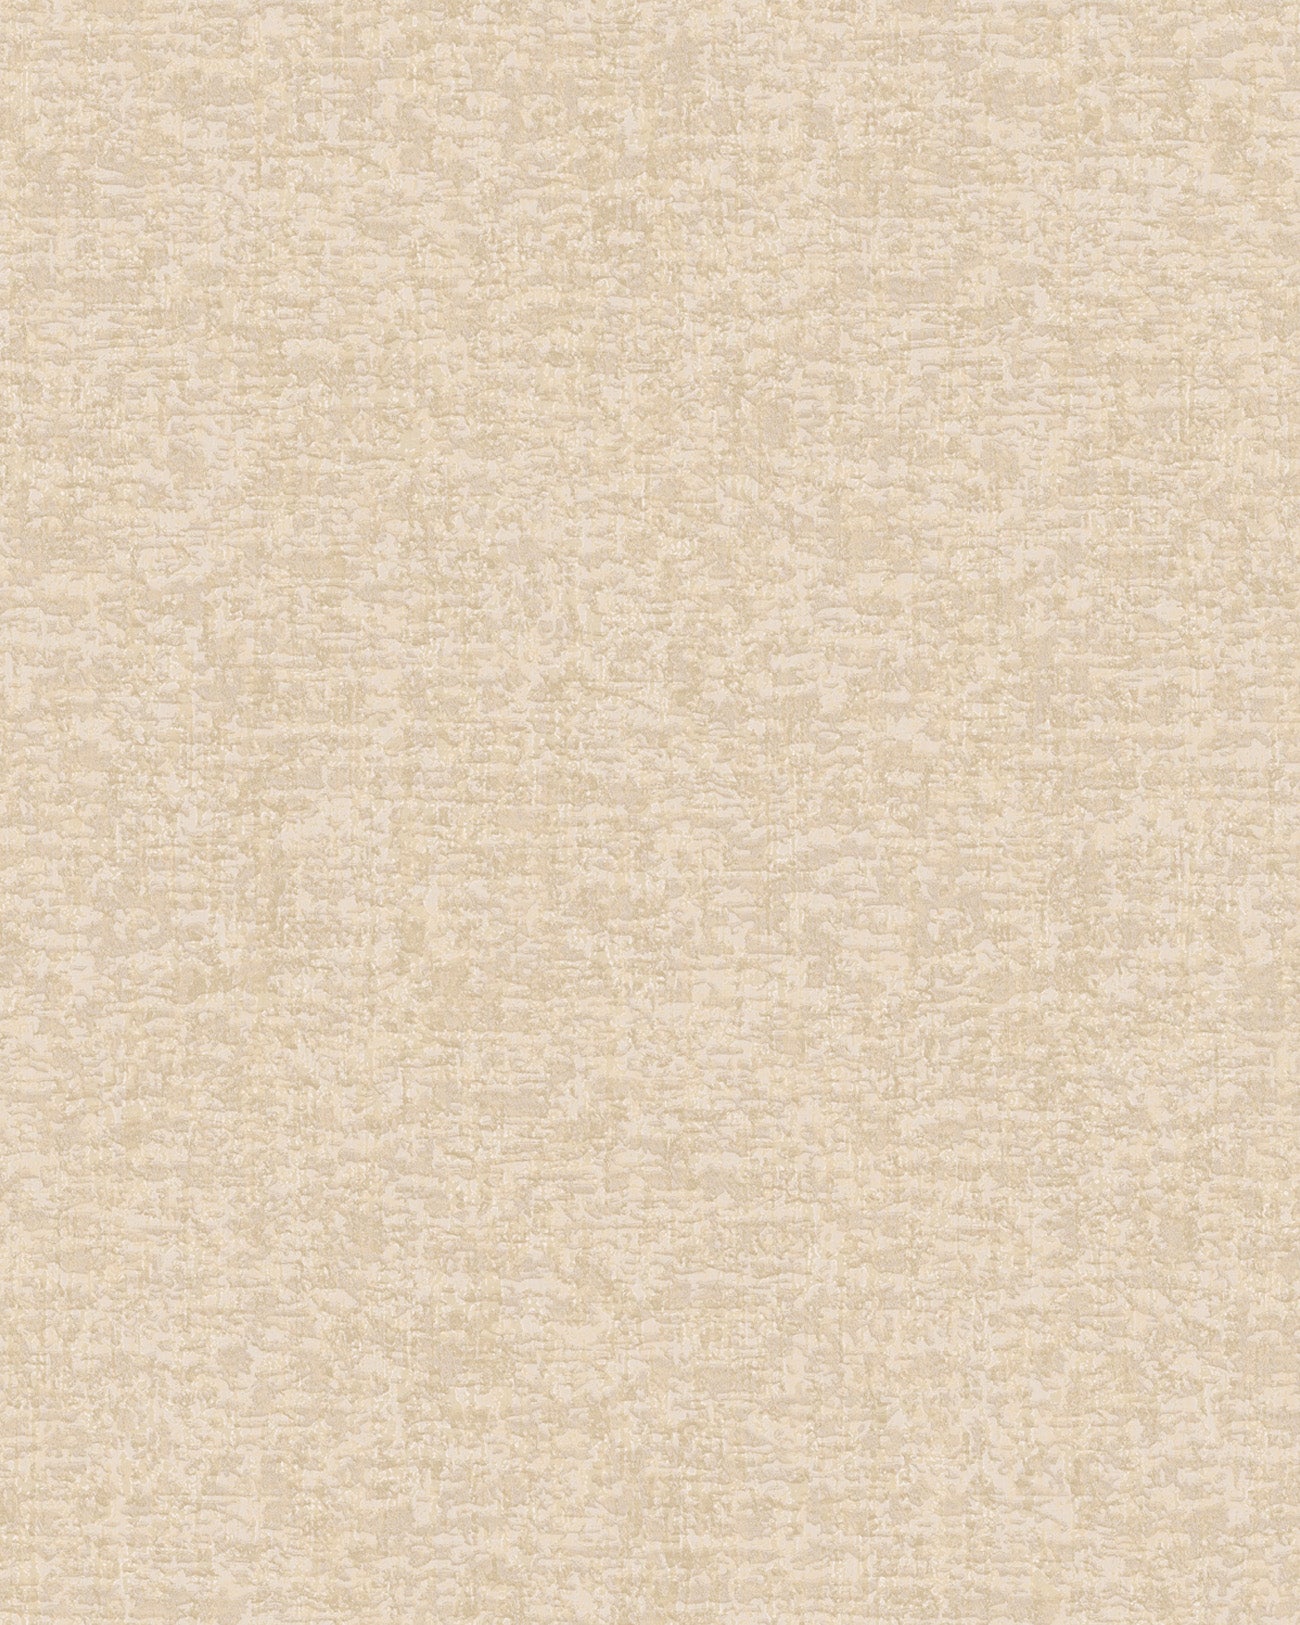 Papier peint aspect textile Profhome DE120052-DI papier peint intissé gaufré à chaud gaufré à l'aspect textile mat crème ivoire 5,33 m2